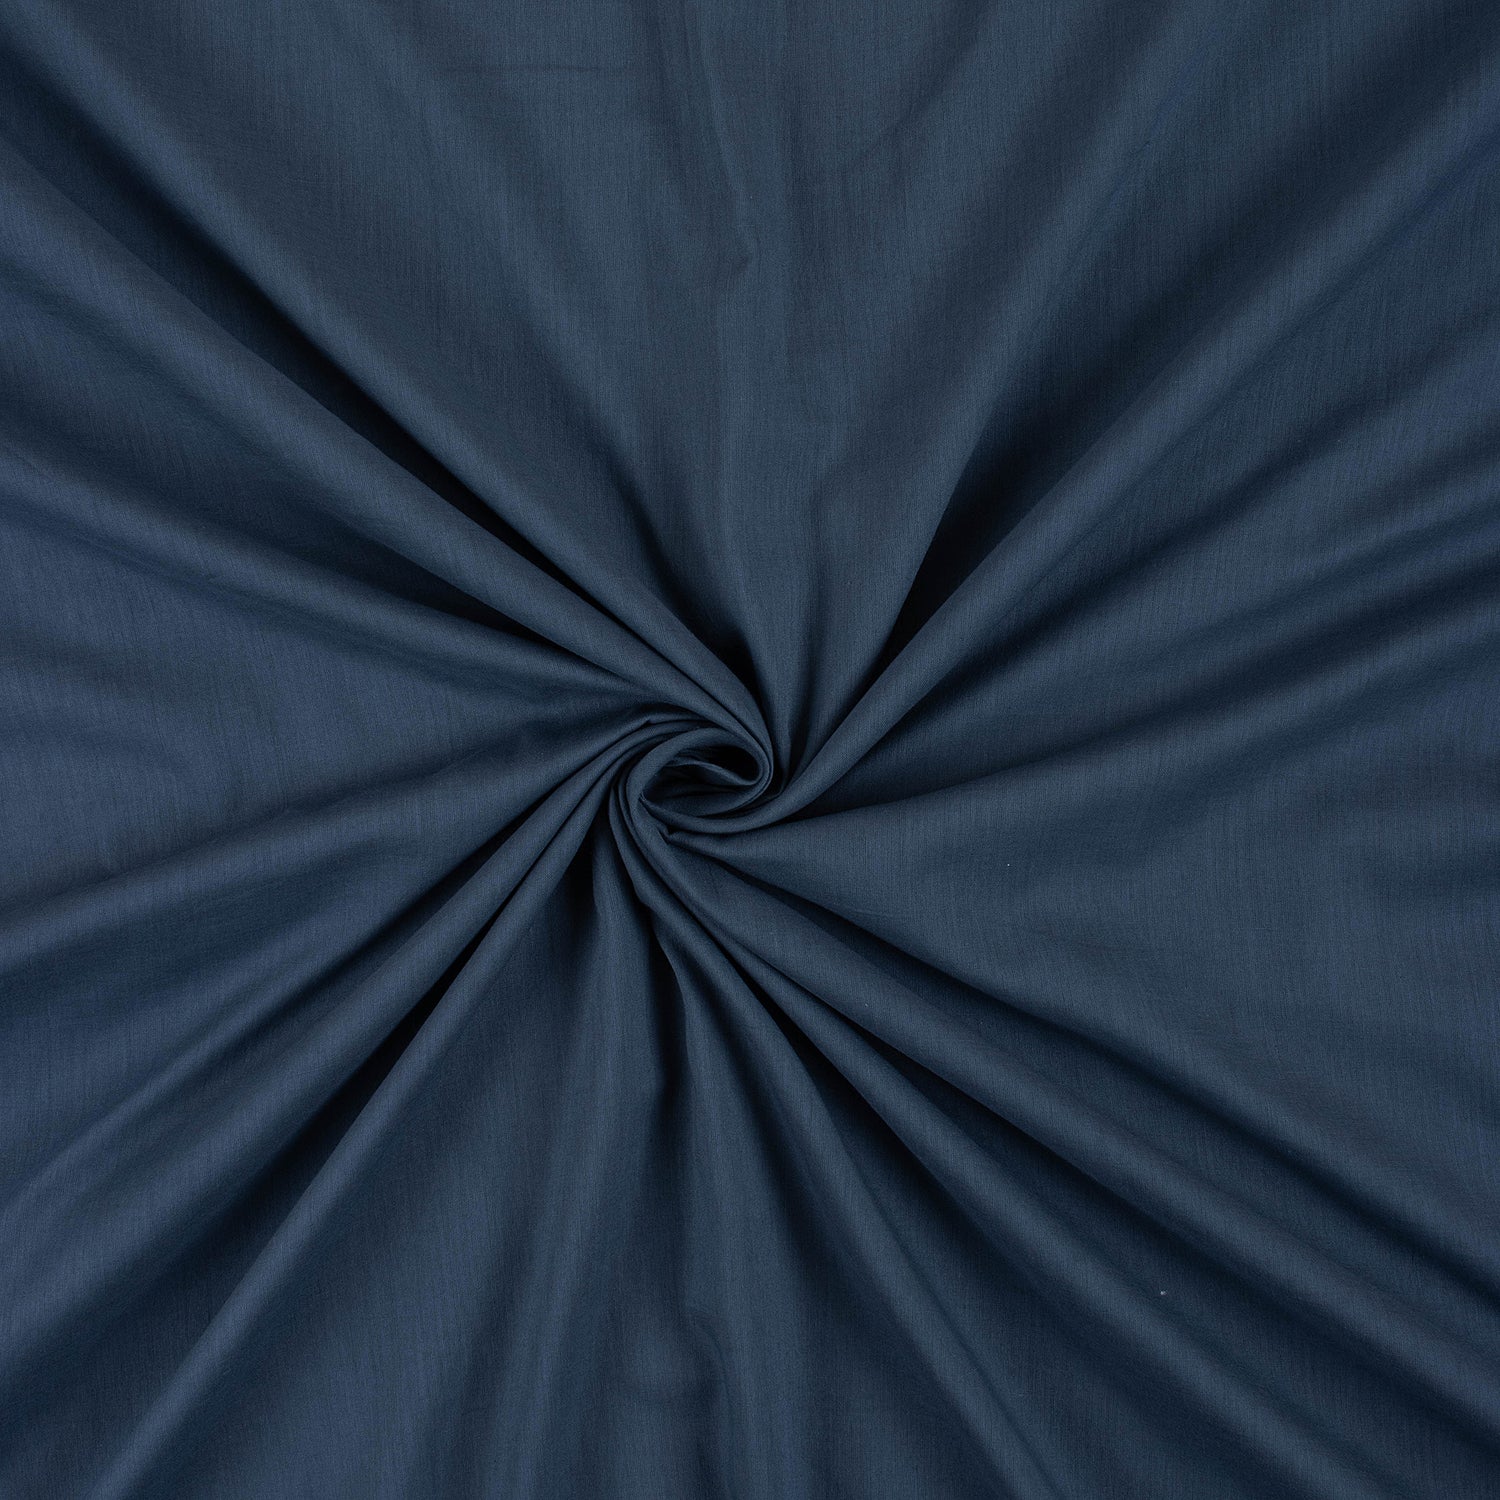 Solid Blue Plain Cotton Fabric